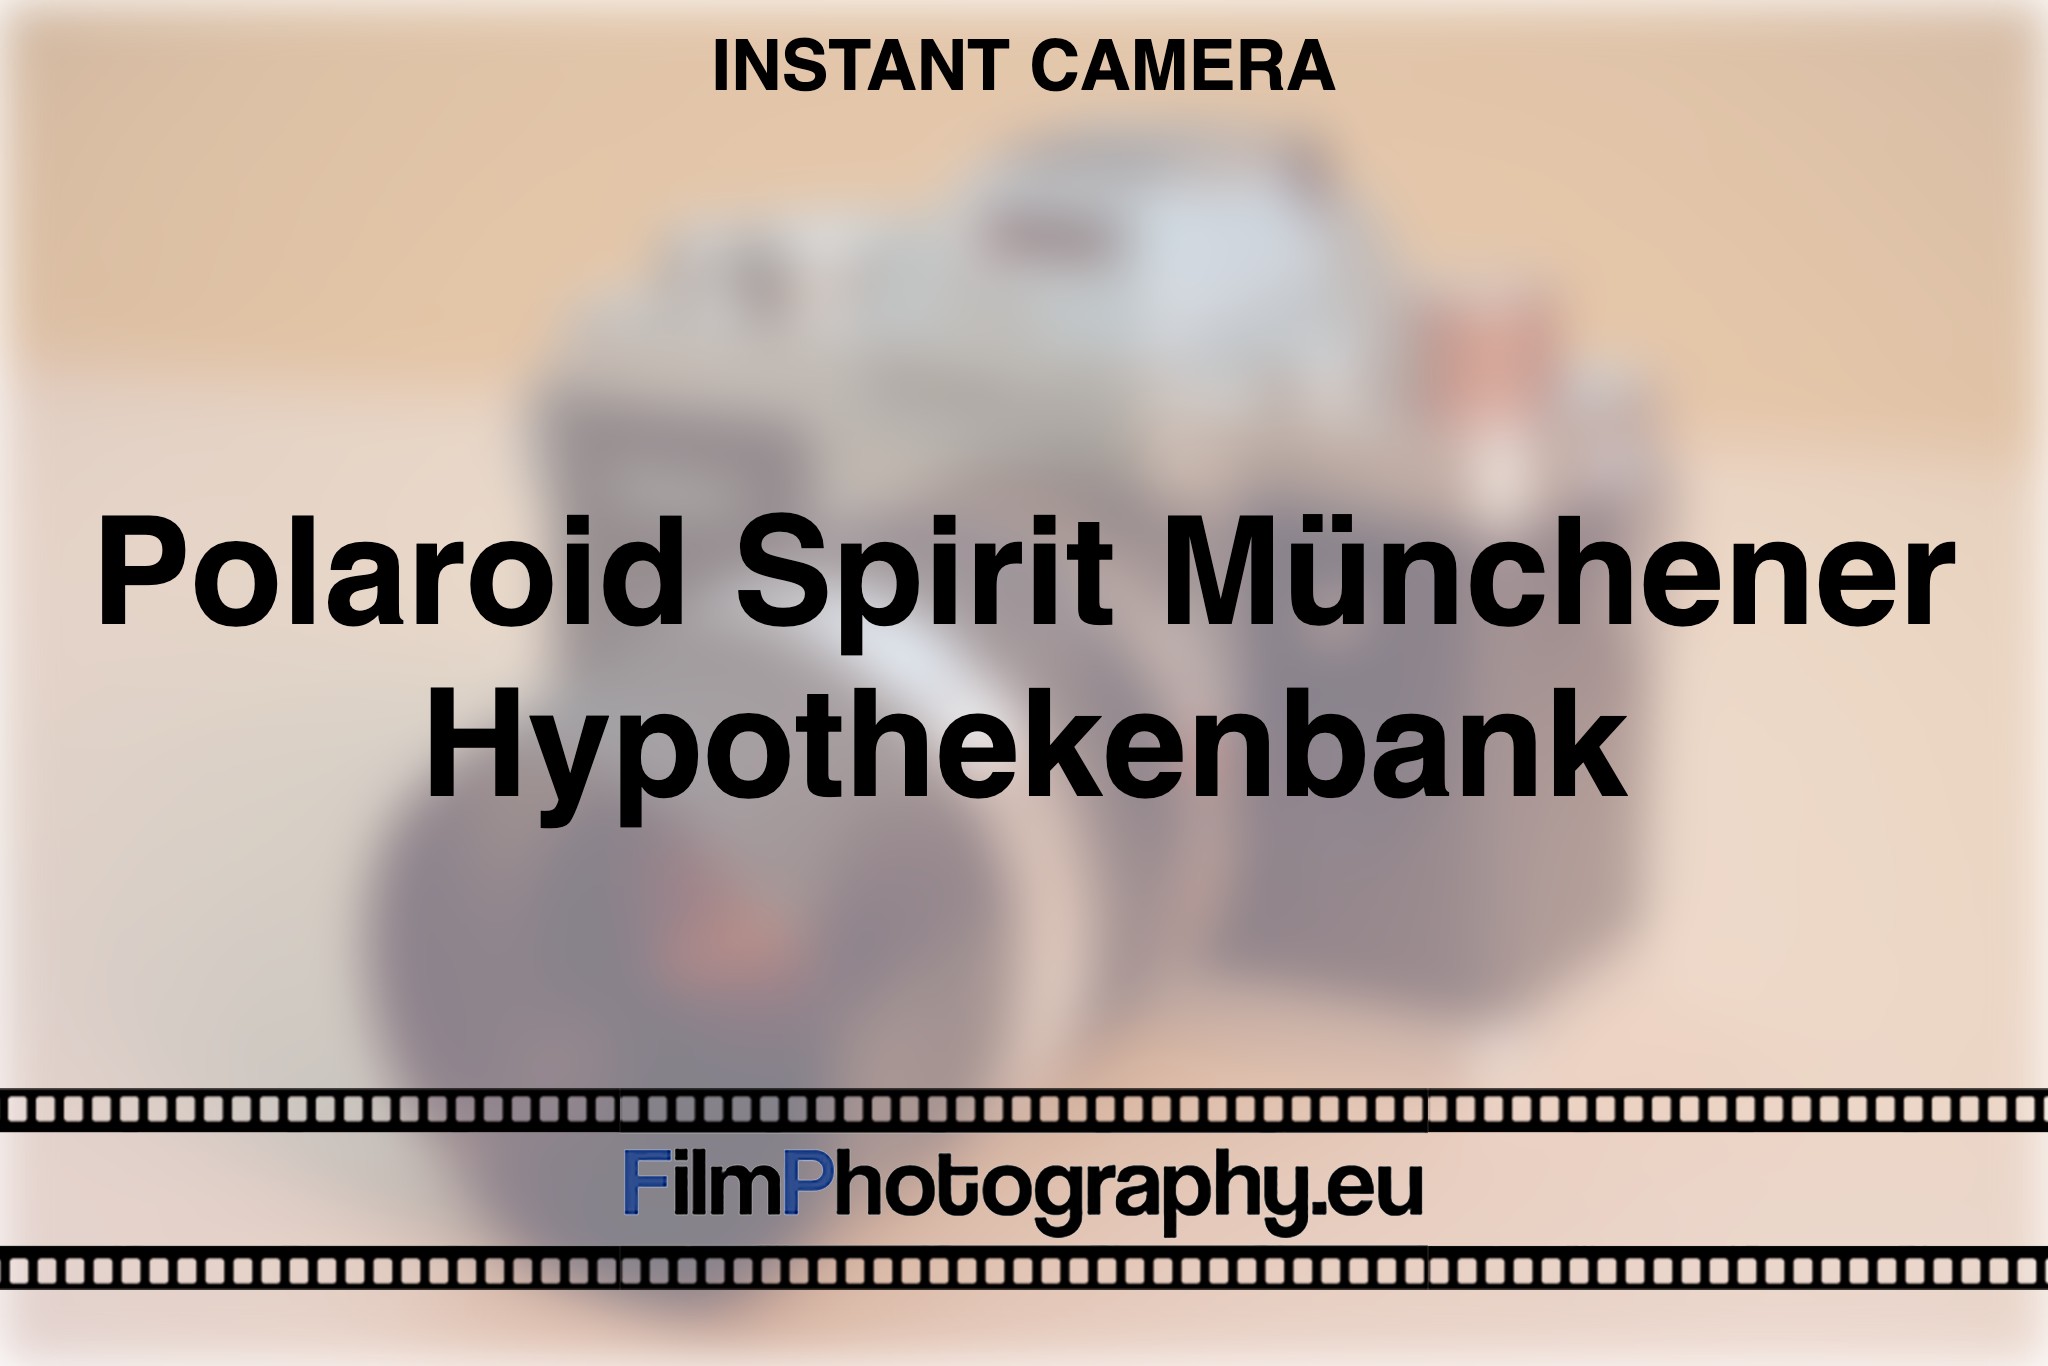 polaroid-spirit-muenchener-hypothekenbank-instant-camera-bnv